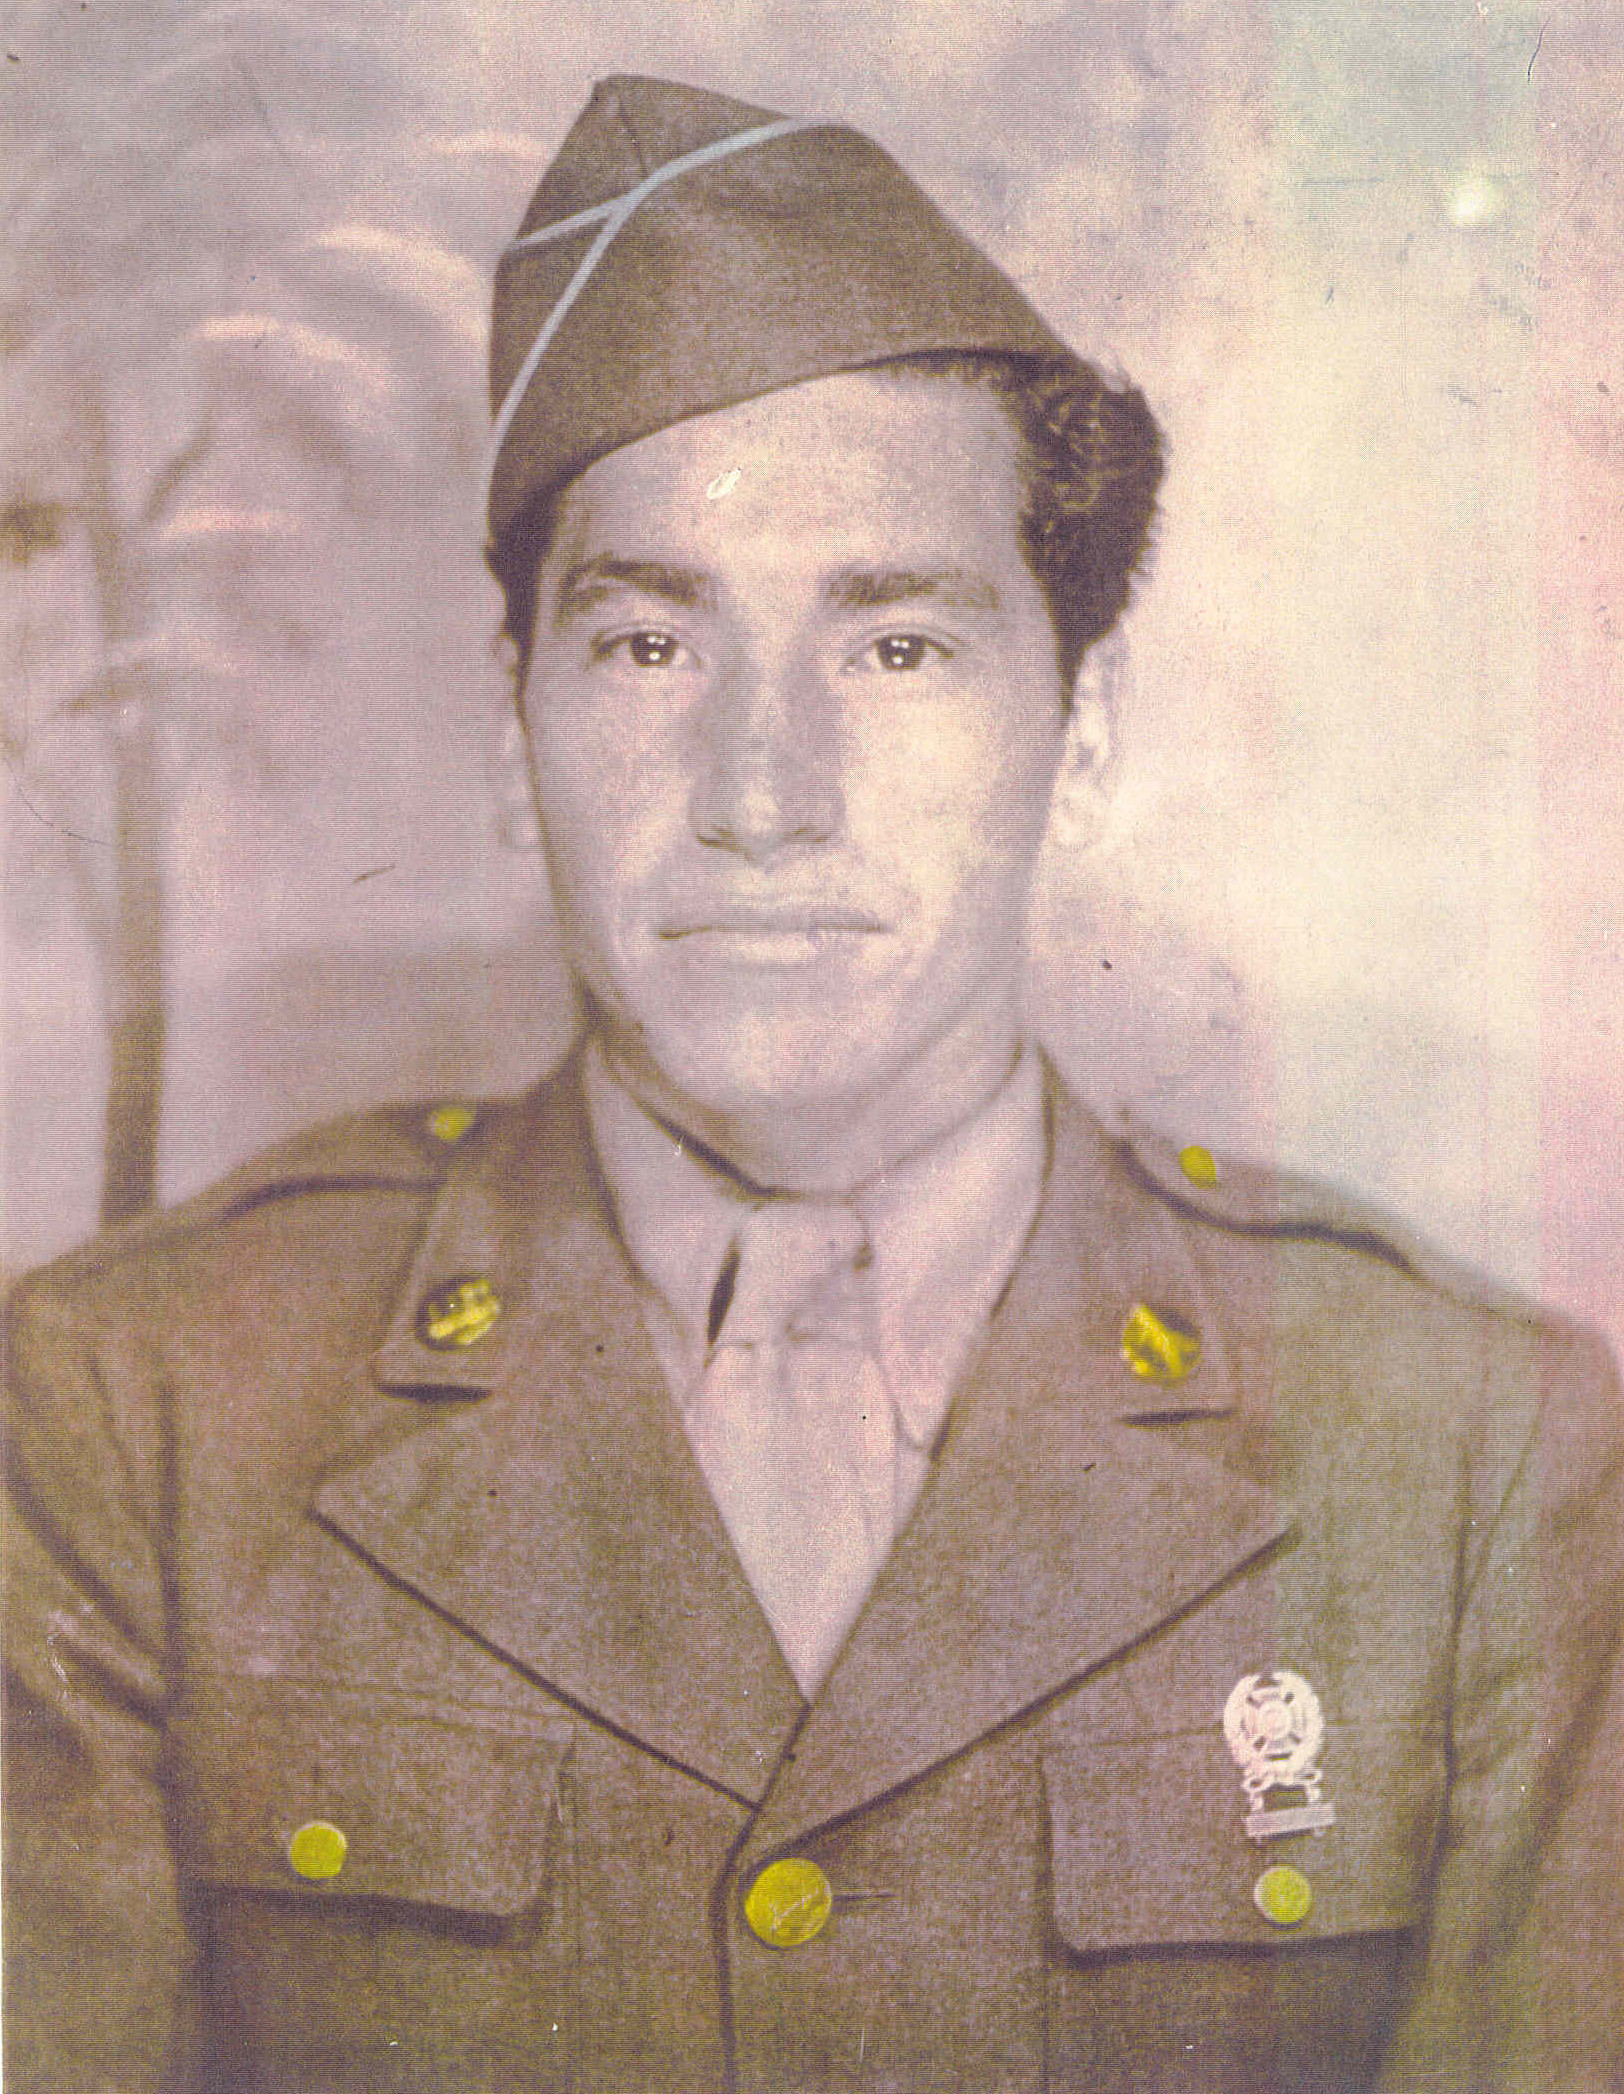 Medal of Honor Recipient David M. Gonzales